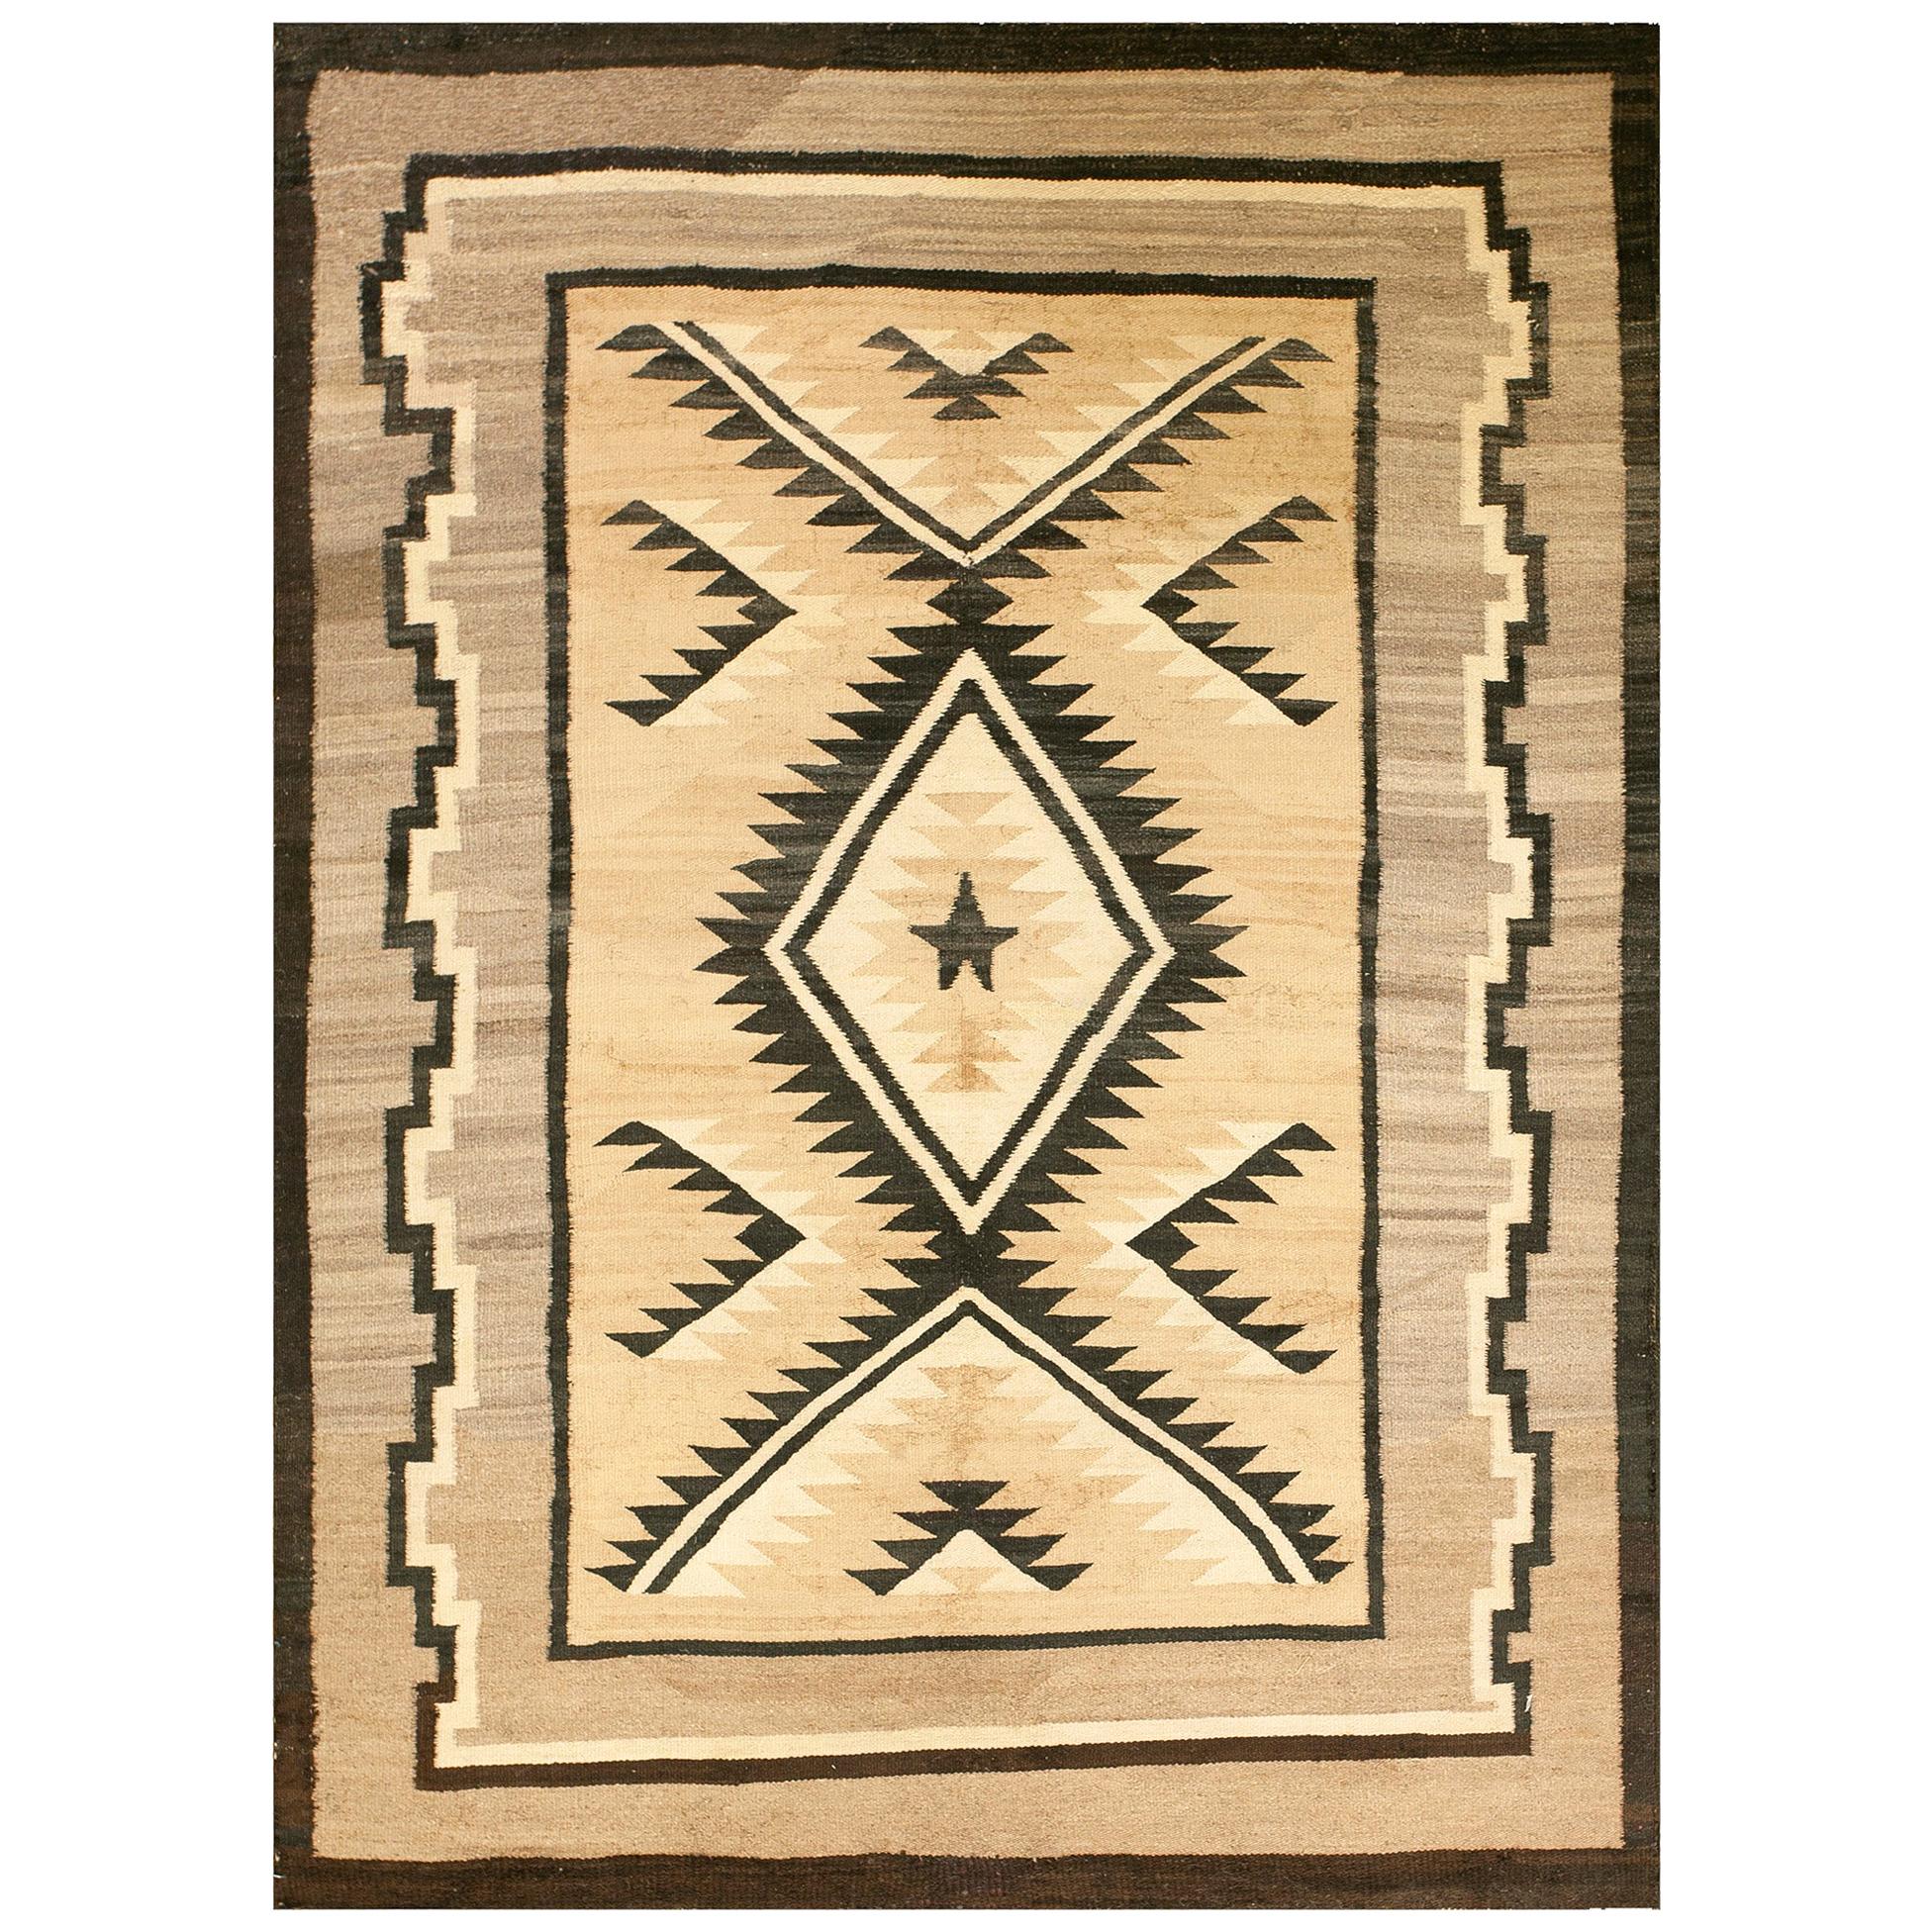 Amerikanischer Navajo-Teppich des frühen 20. Jahrhunderts ( 4'2" x 5'10" - 127 x 178)